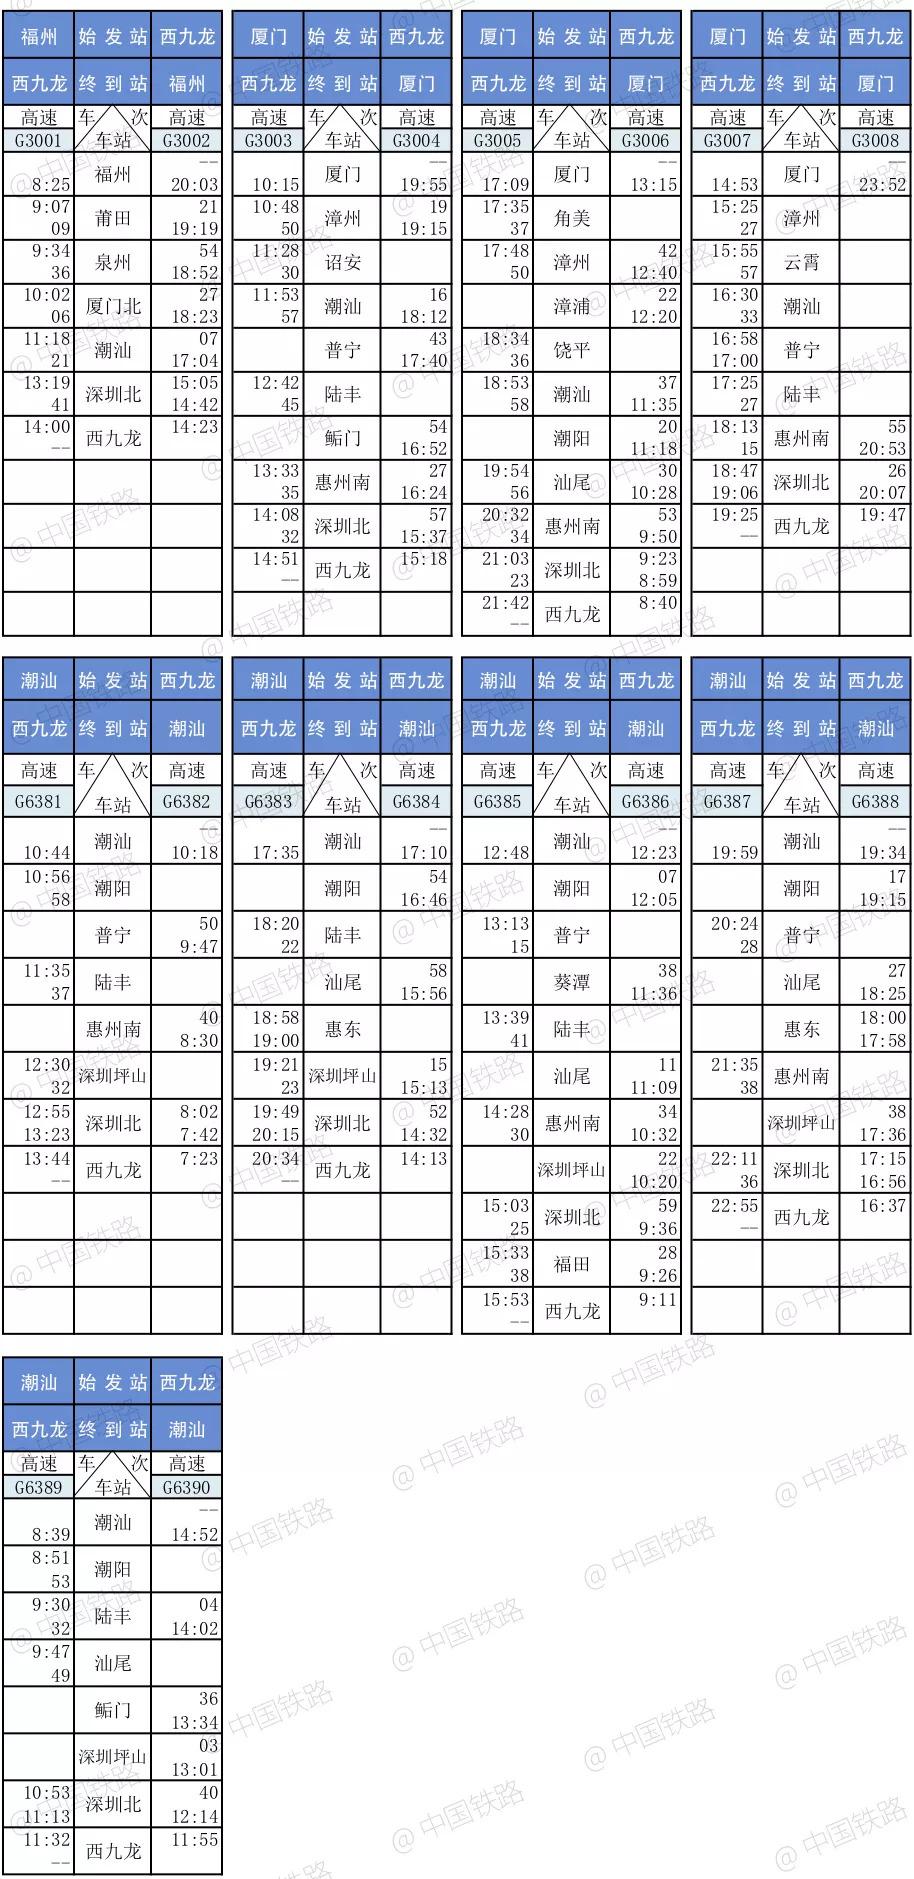 深圳高铁时间深圳高铁时间表表